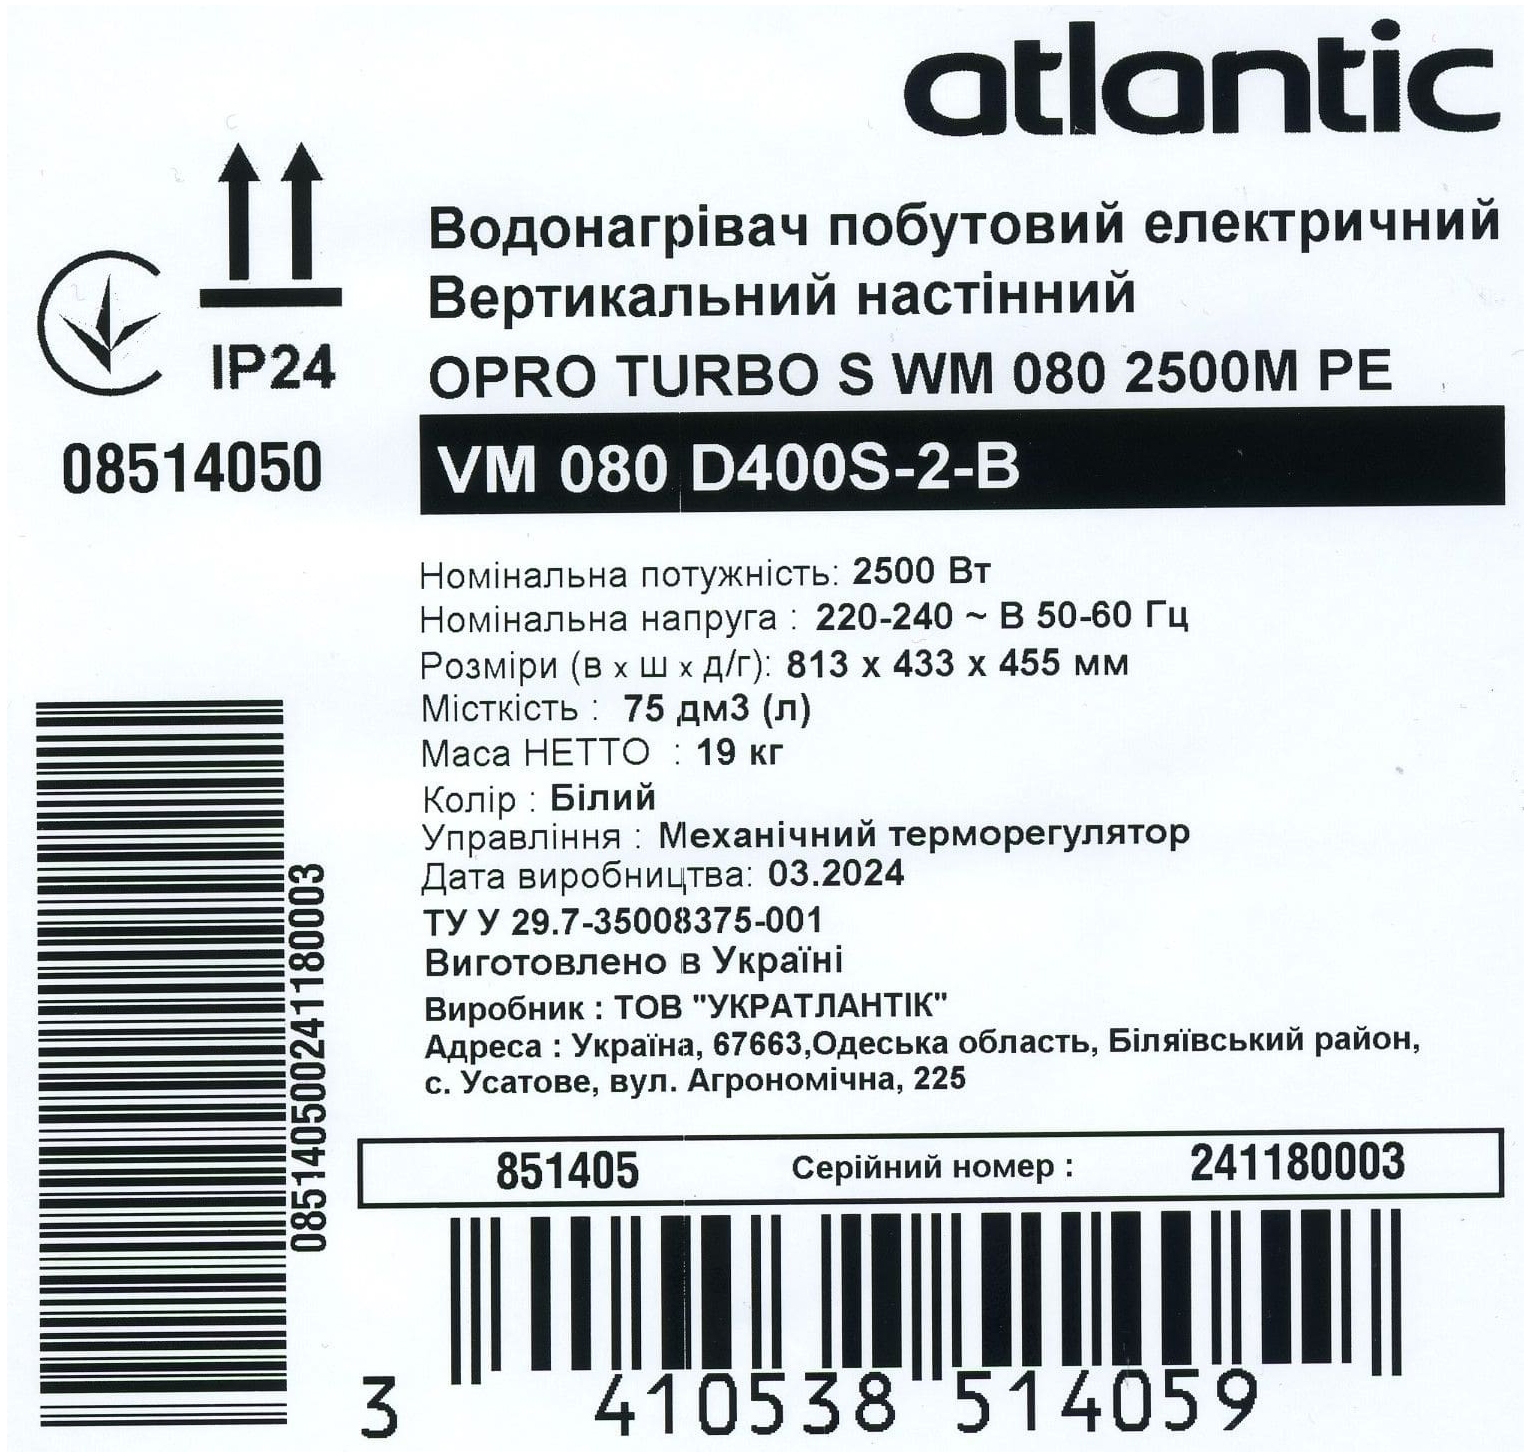 Atlantic Opro Turbo VM 080 D400S-2-B (2500W) в магазині в Києві - фото 10